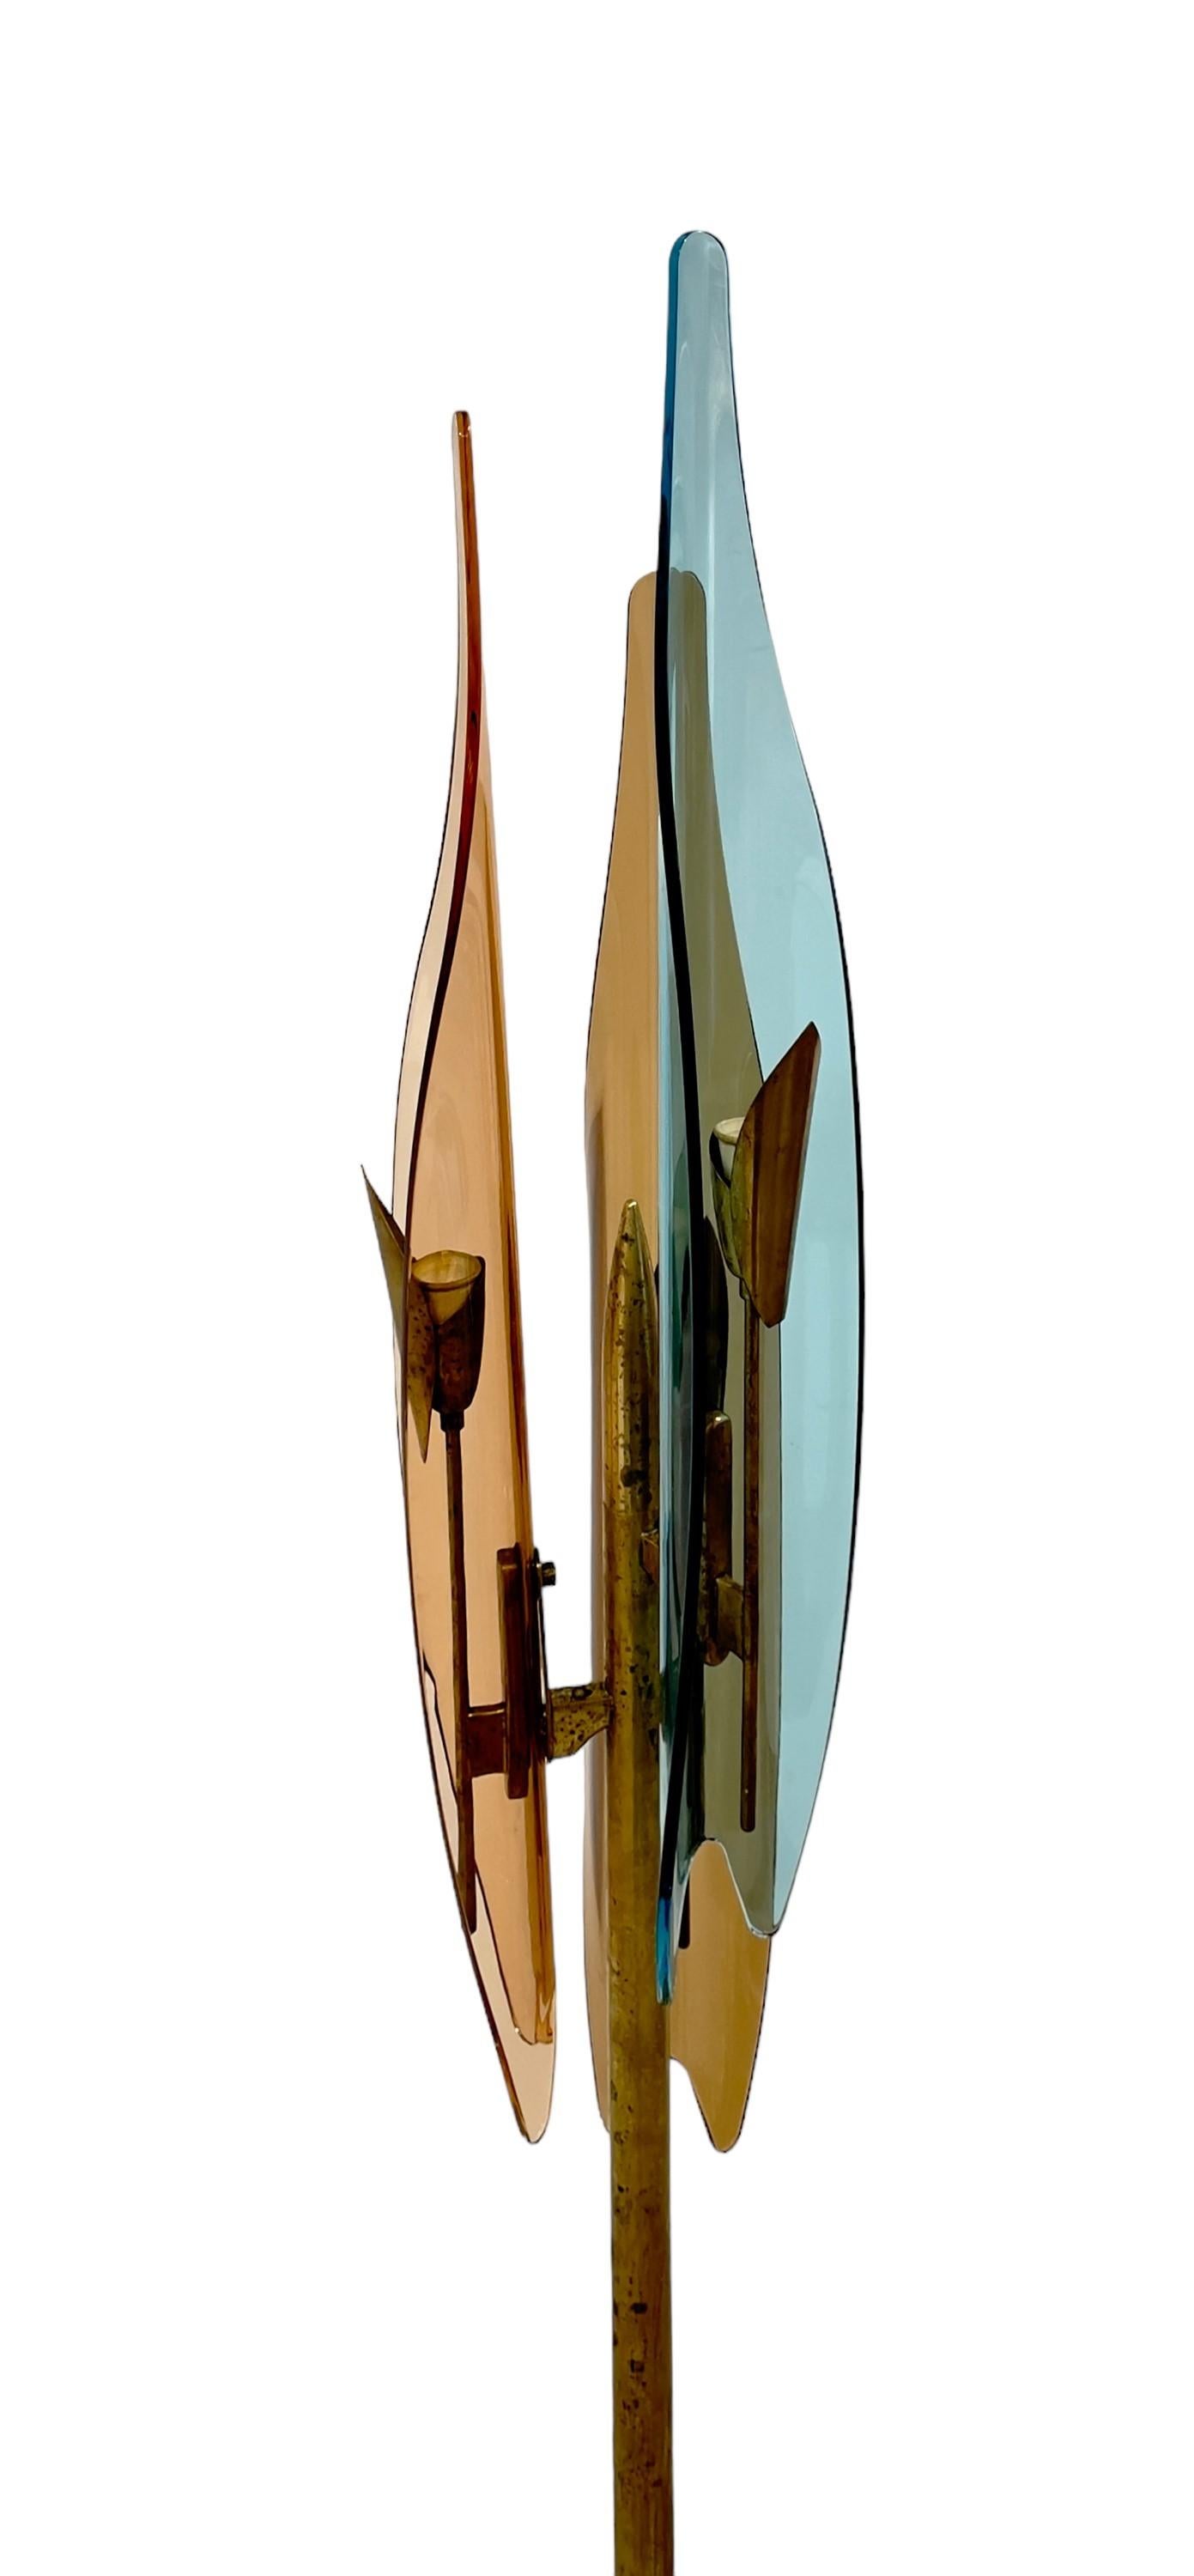 Seltene Dahlia Stehleuchte mit Messingrahmen und gebogenen farbigen Glasschirmen. Designer Max Ingrand , Hersteller Fontana Arte. 1950s.